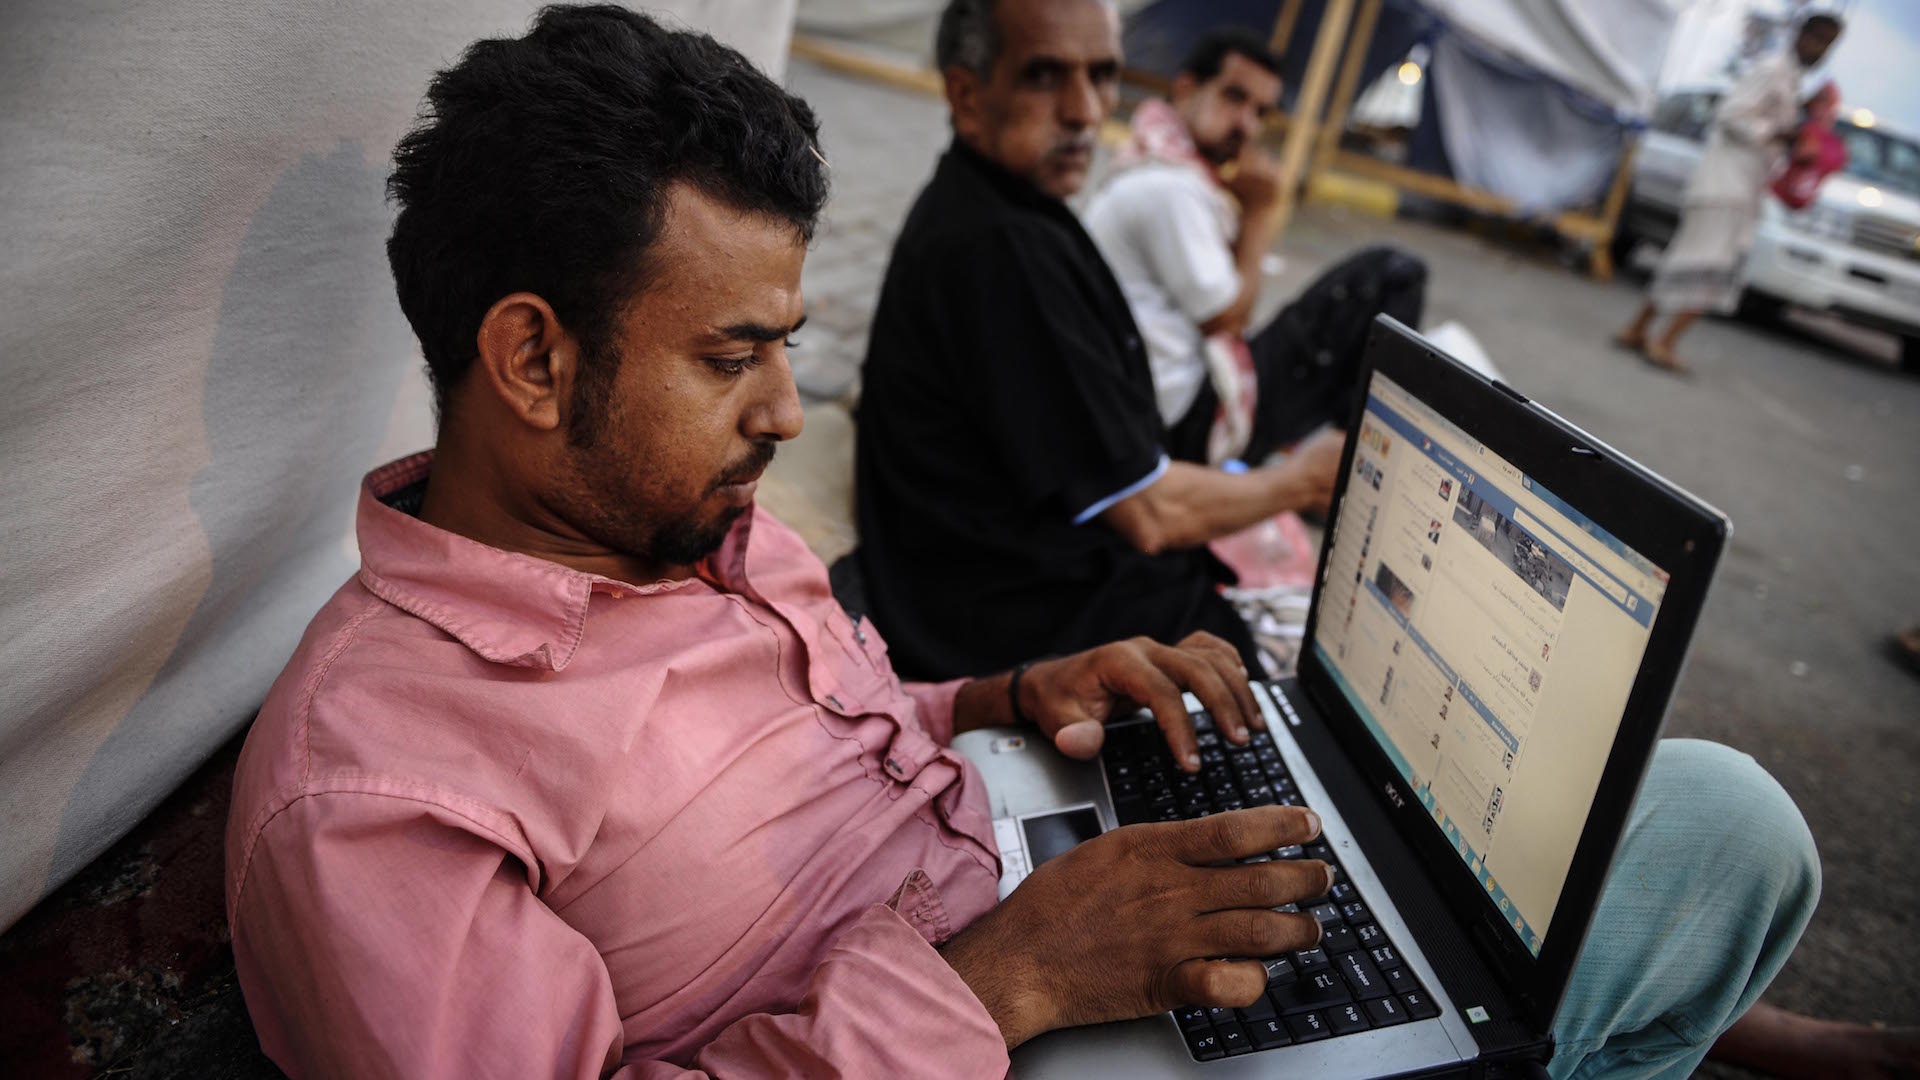 بذريعة الحرب الناعمة.. الحوثية تضعف الإنترنت في مناطق سيطرتها